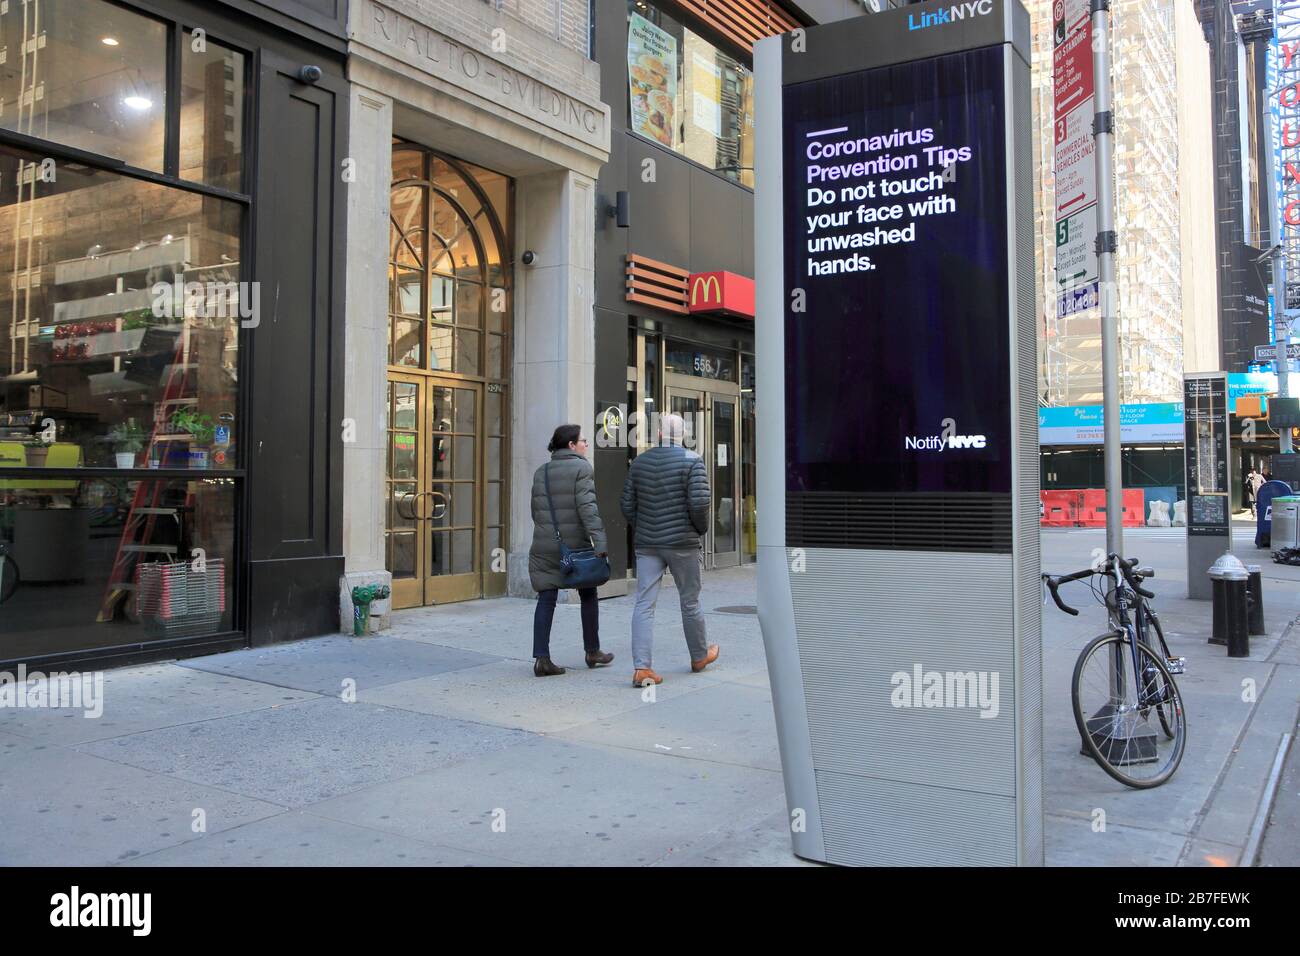 LinkNYC WiFi gratuito kiosko signo que ofrece consejos de prevención de coronavirus, Manhattan, Nueva York 15 de marzo de 2020 Foto de stock